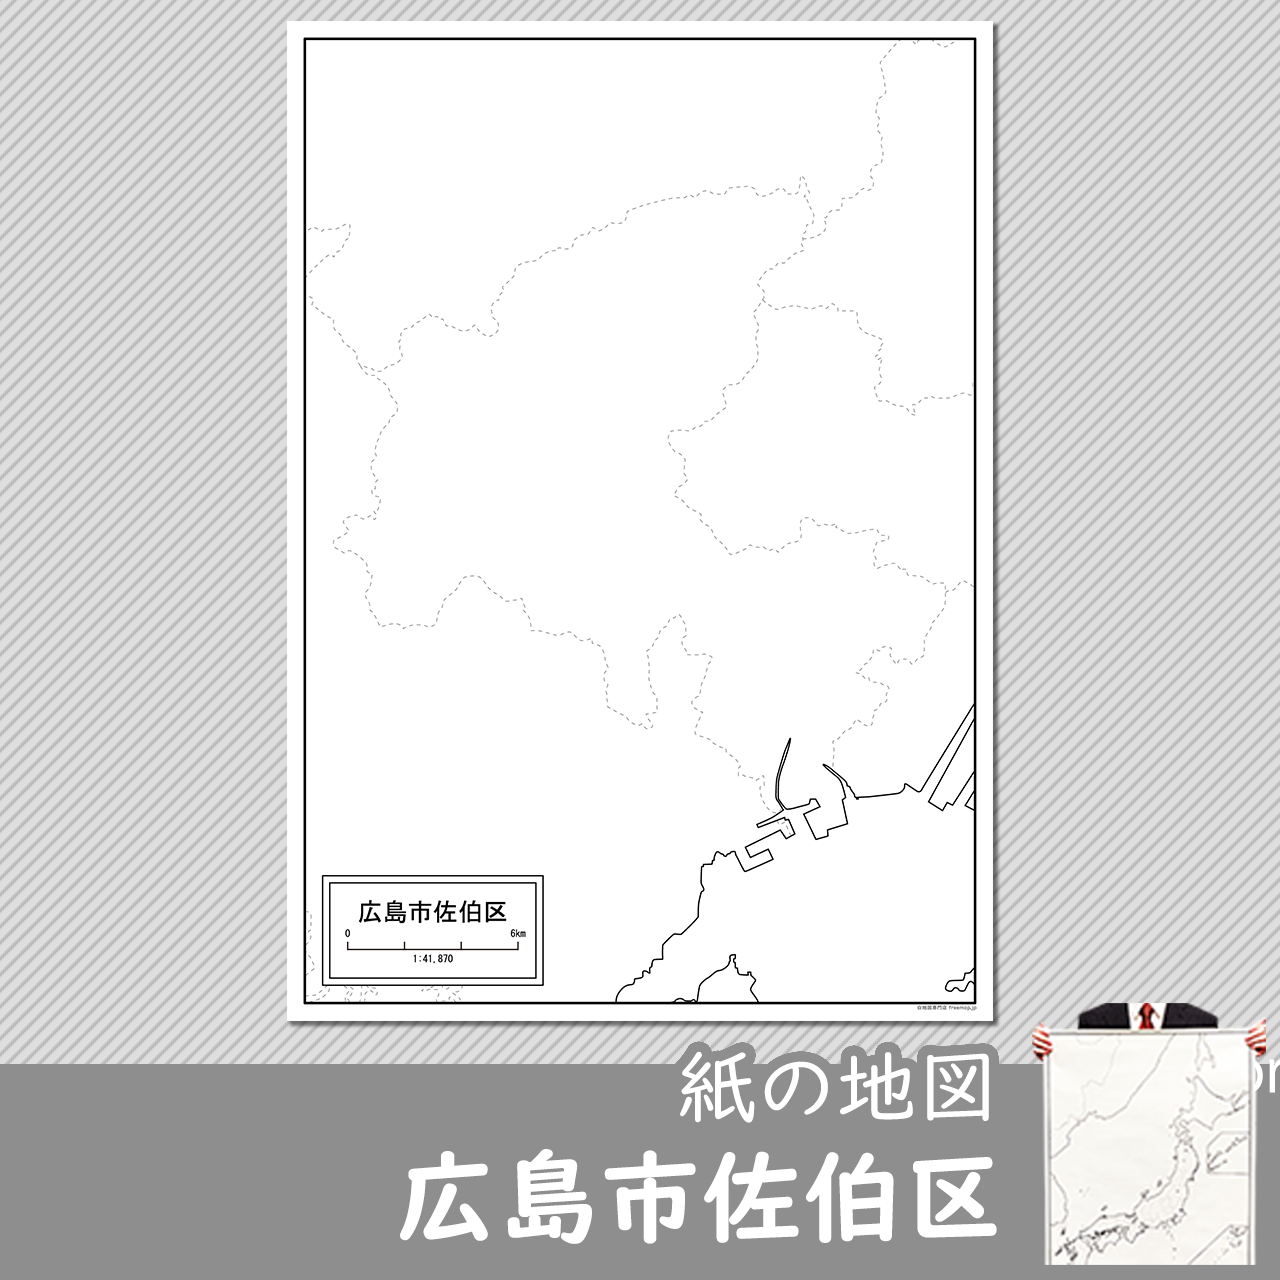 広島市佐伯区の紙の白地図のサムネイル